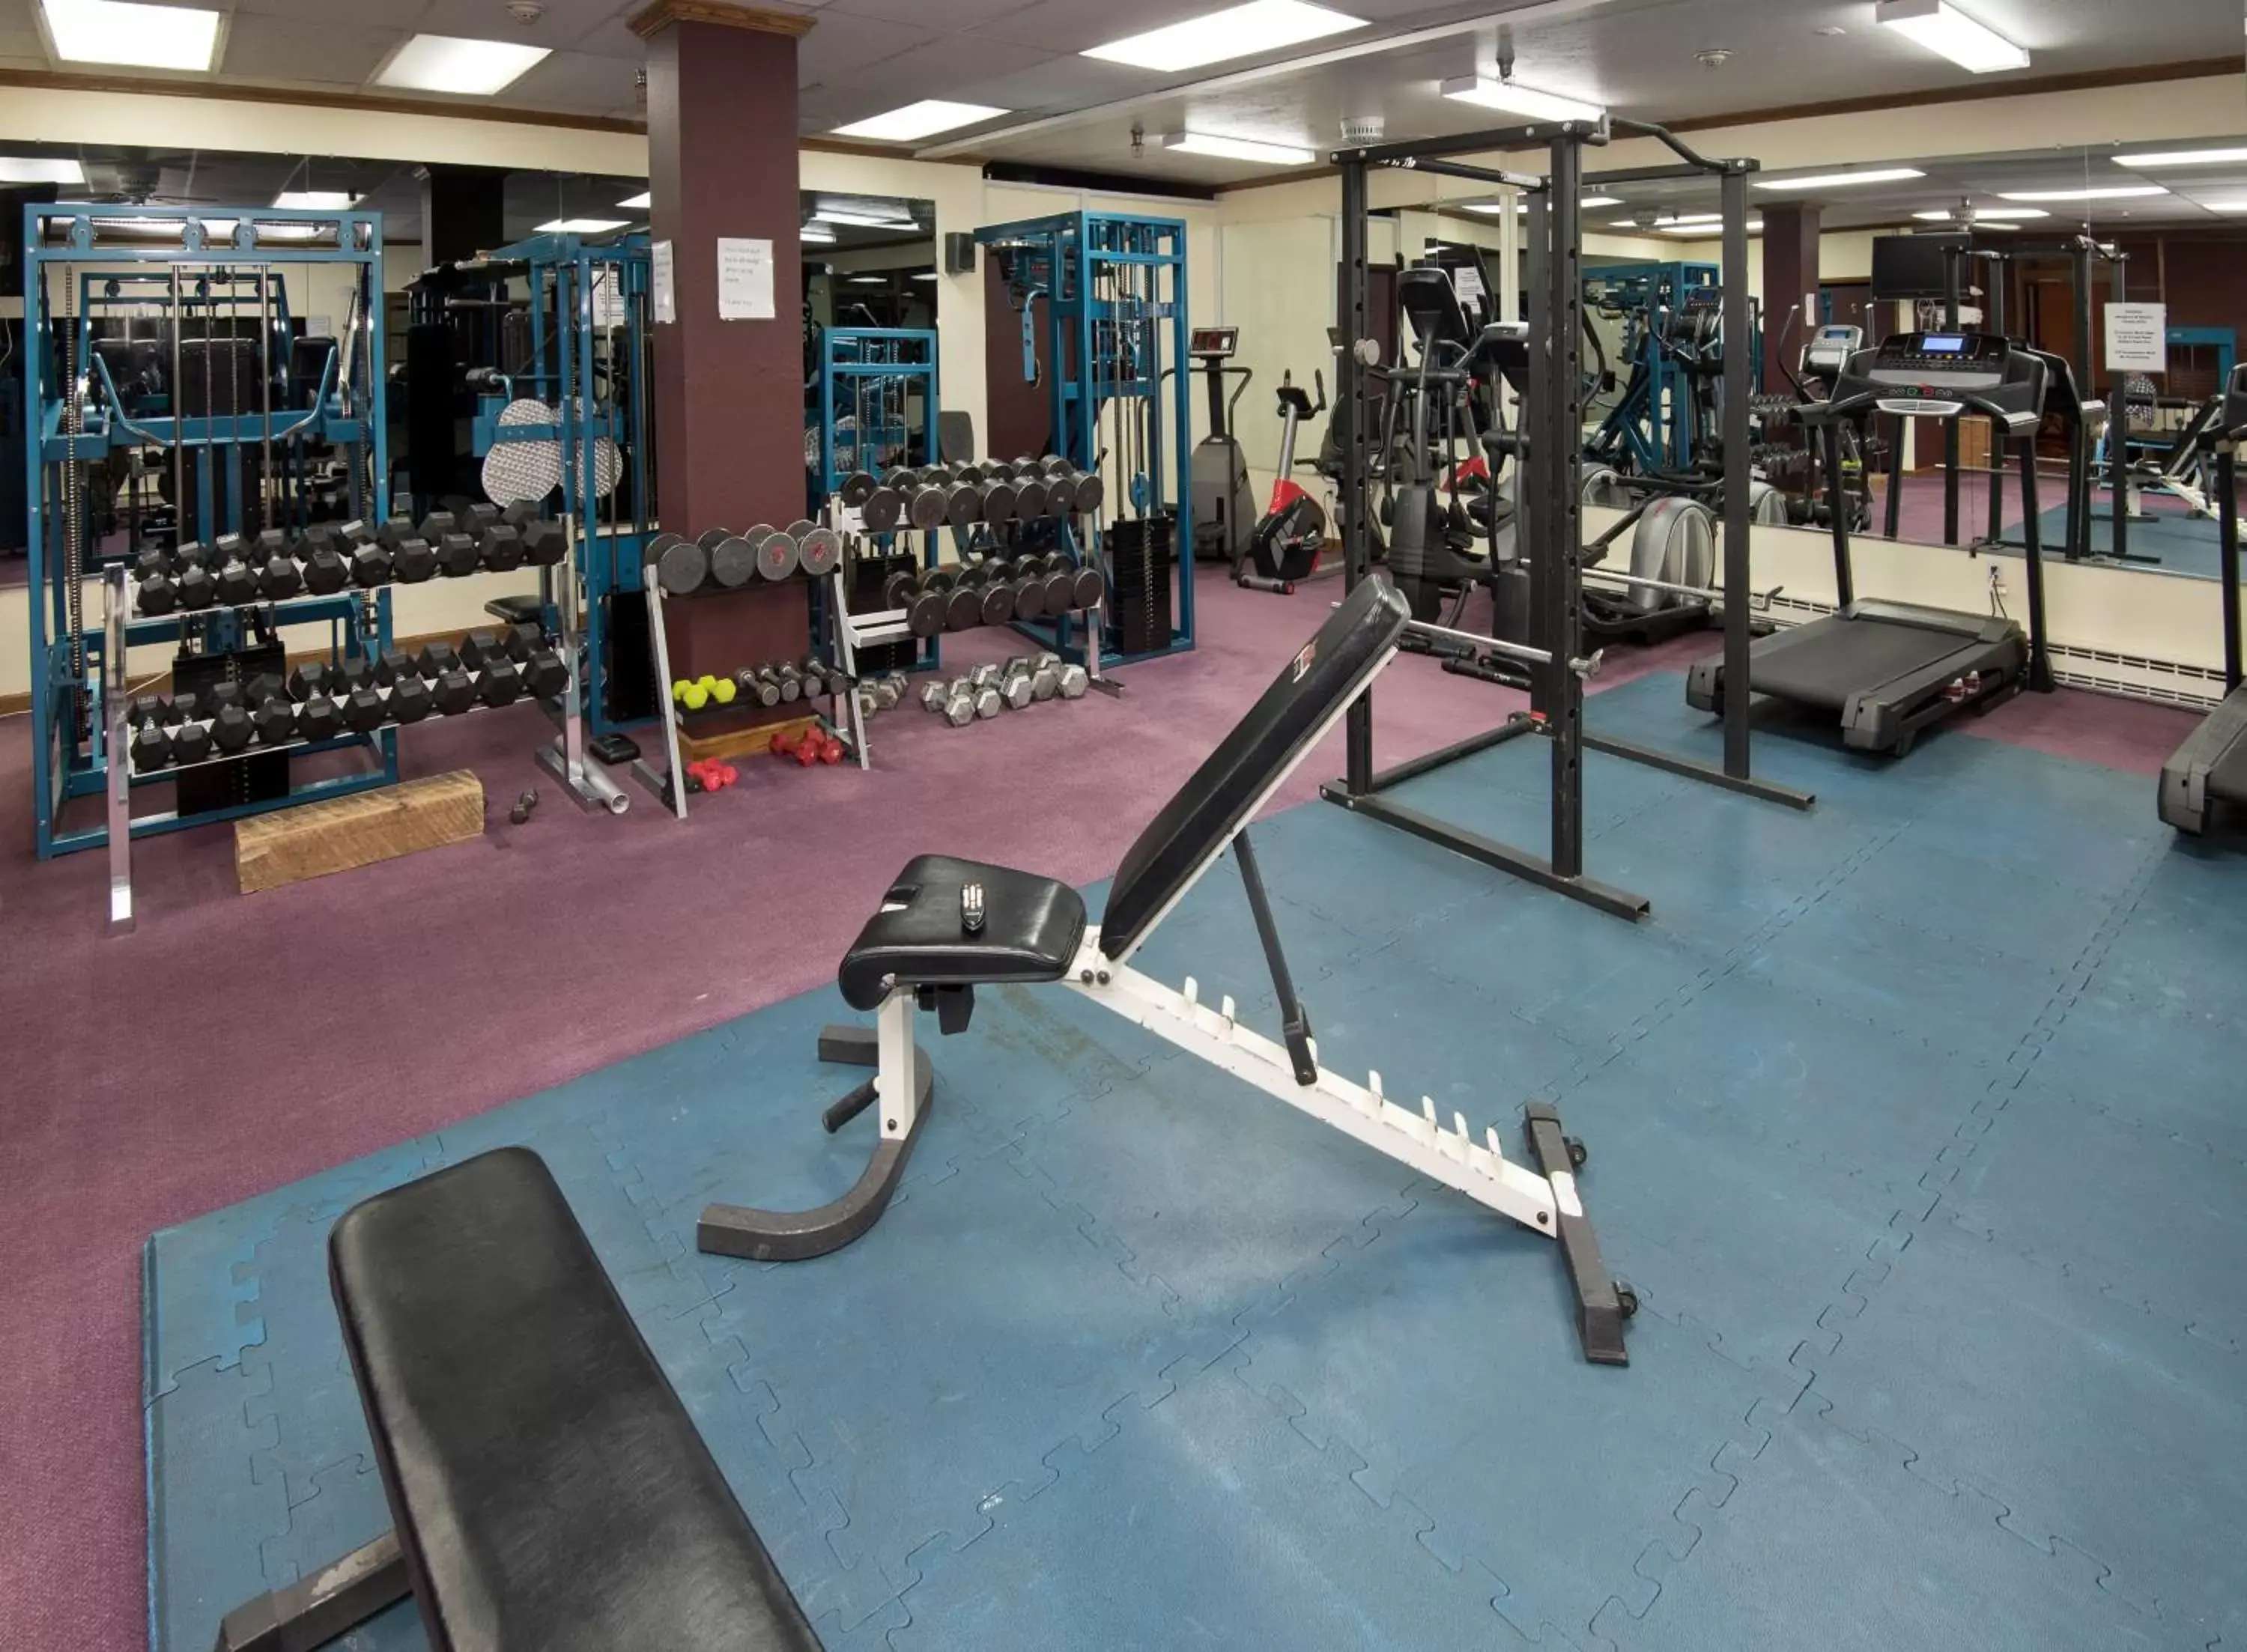 Fitness centre/facilities, Fitness Center/Facilities in Vail Run Resort